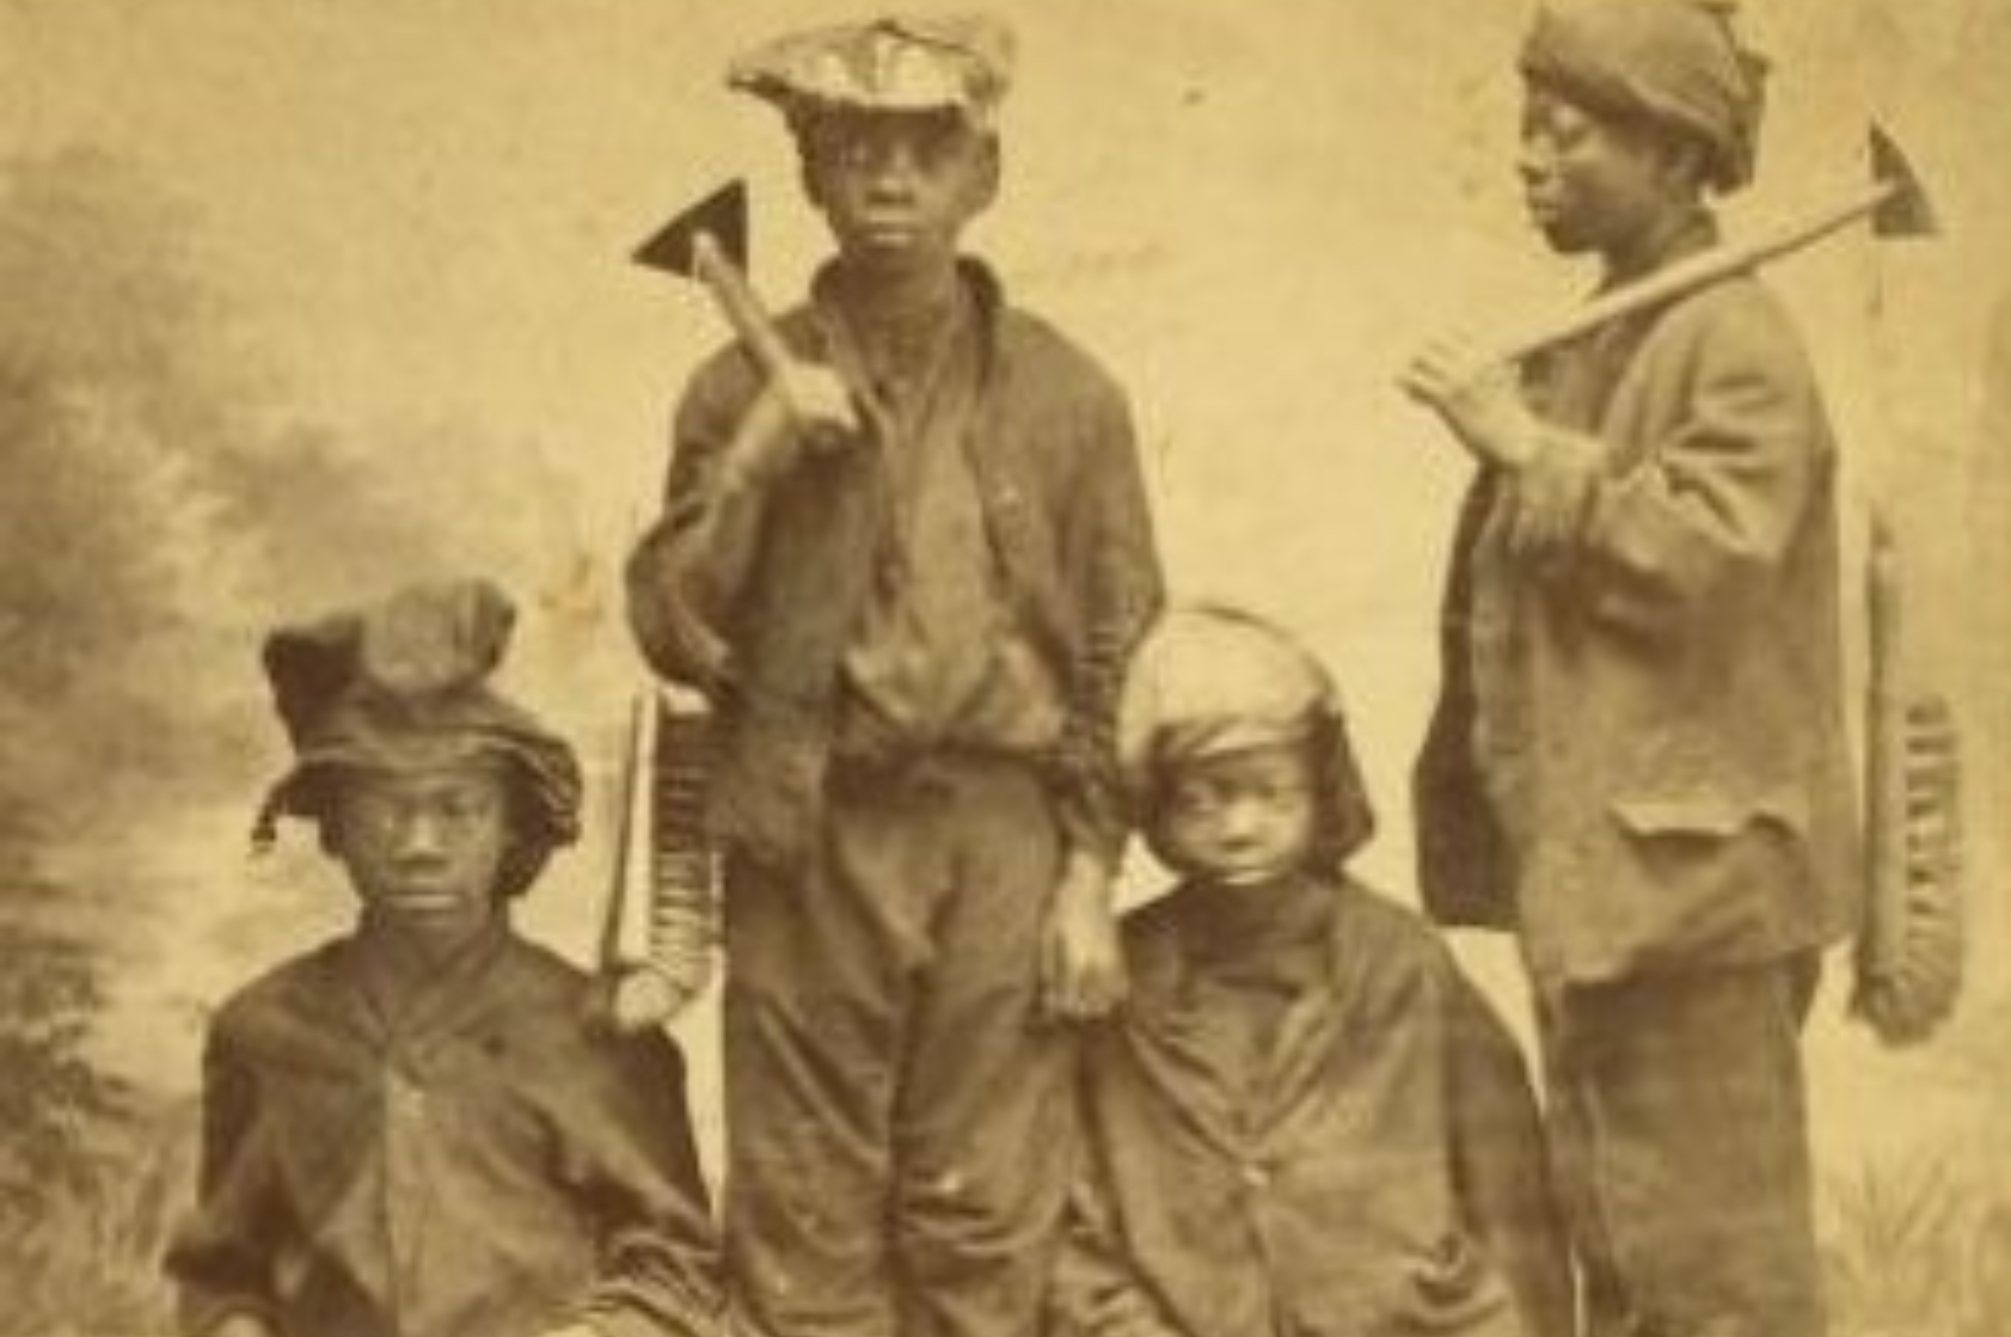 Τα παιδιά της καμινάδας: Η αληθινή ιστορία φρίκης των παιδιών που άφηναν νηστικά για να χωρούν στους στενούς σωλήνες και χιλιάδες από αυτά έπαθαν ασφυξία και πέθαναν μέσα στα βρόμικα λαγούμια